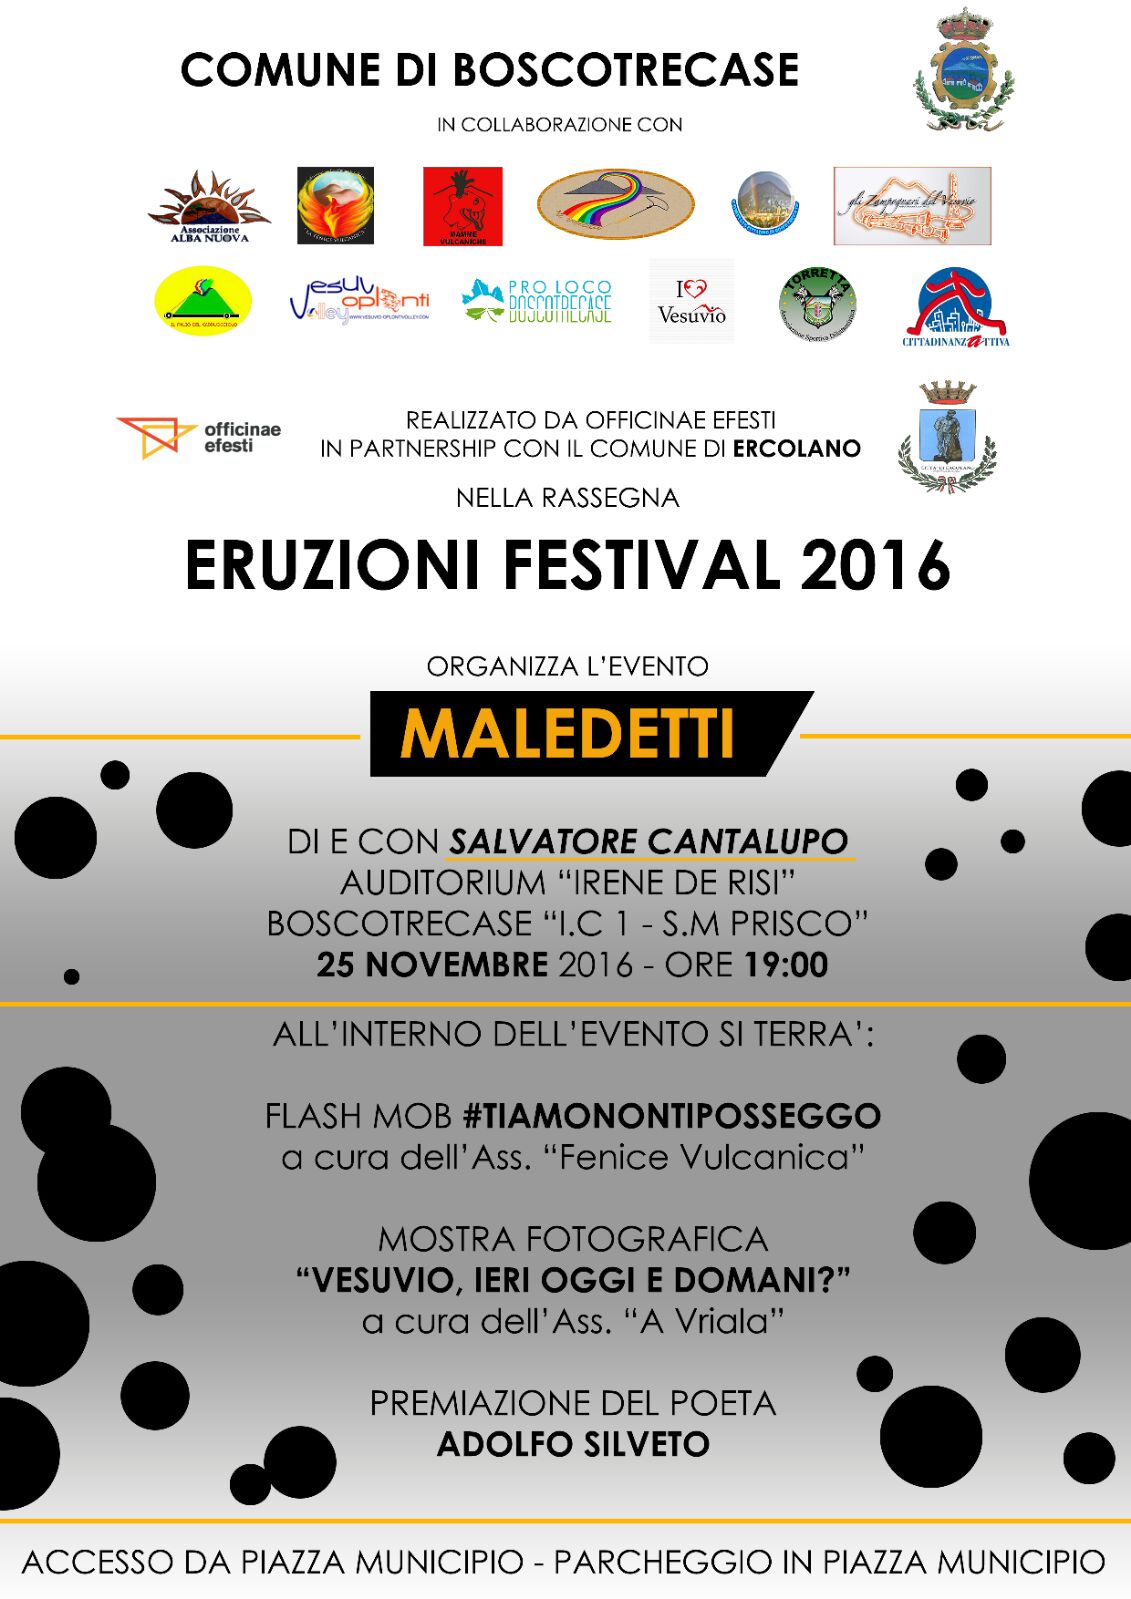 Eruzioni Festival 2016 Maledetti Boscotrecase